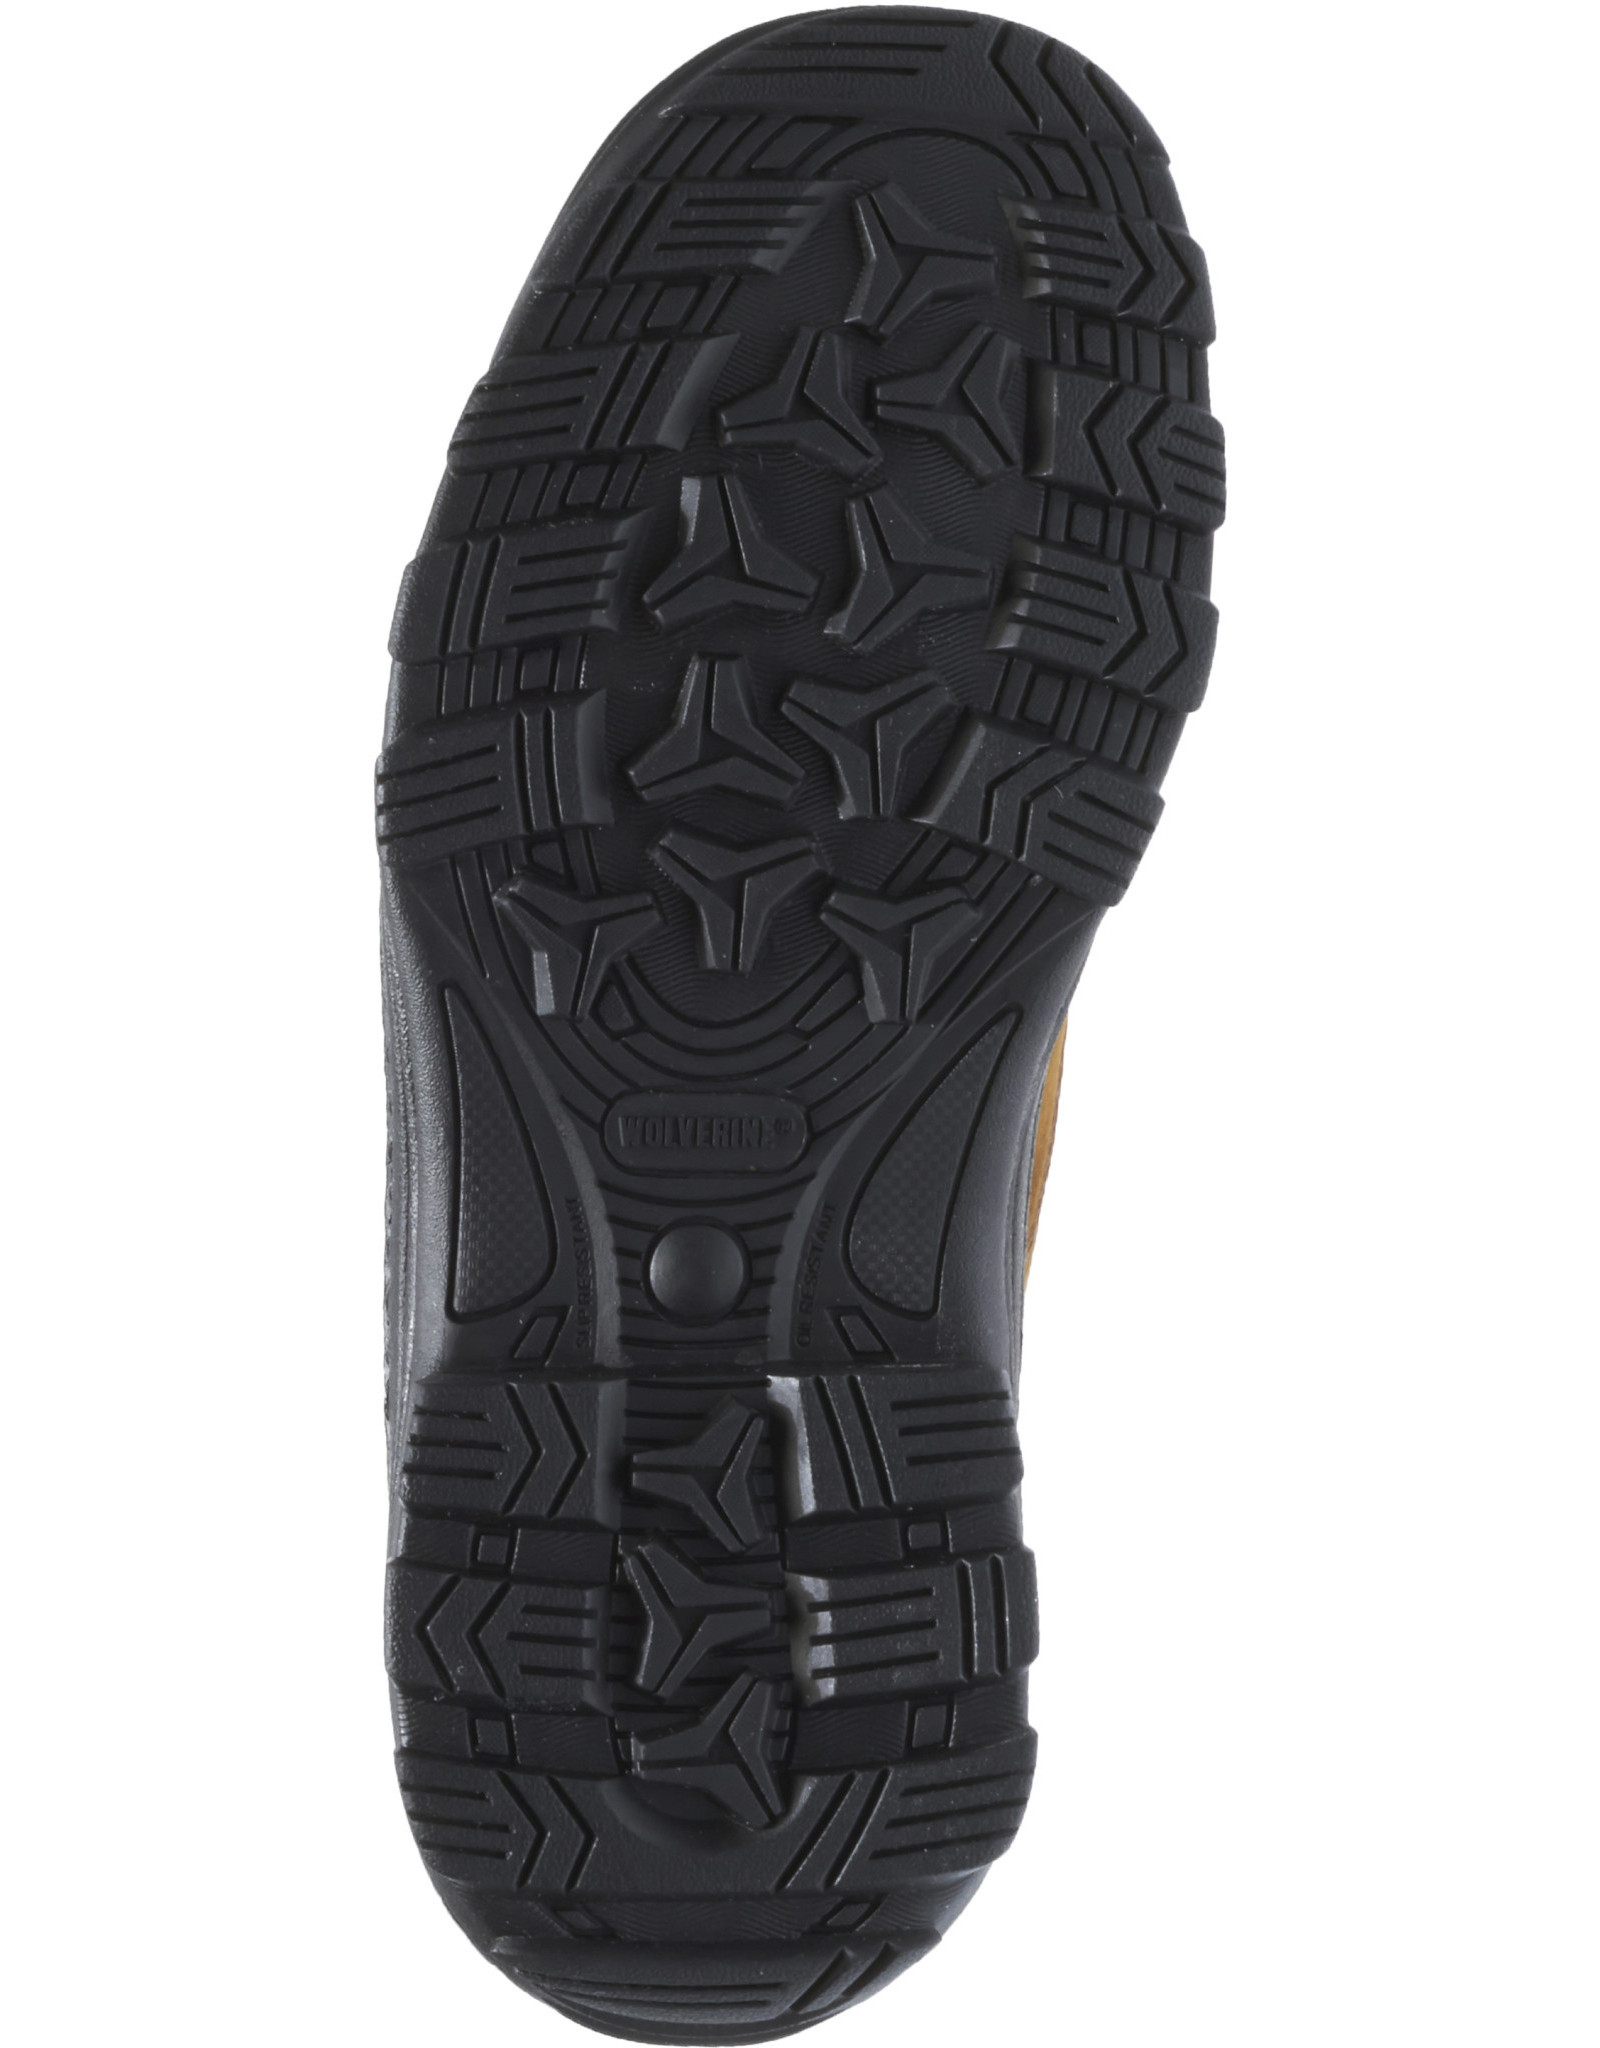 Wolverine Men's Durbin W05484 6” Waterproof Soft Toe Work Boots